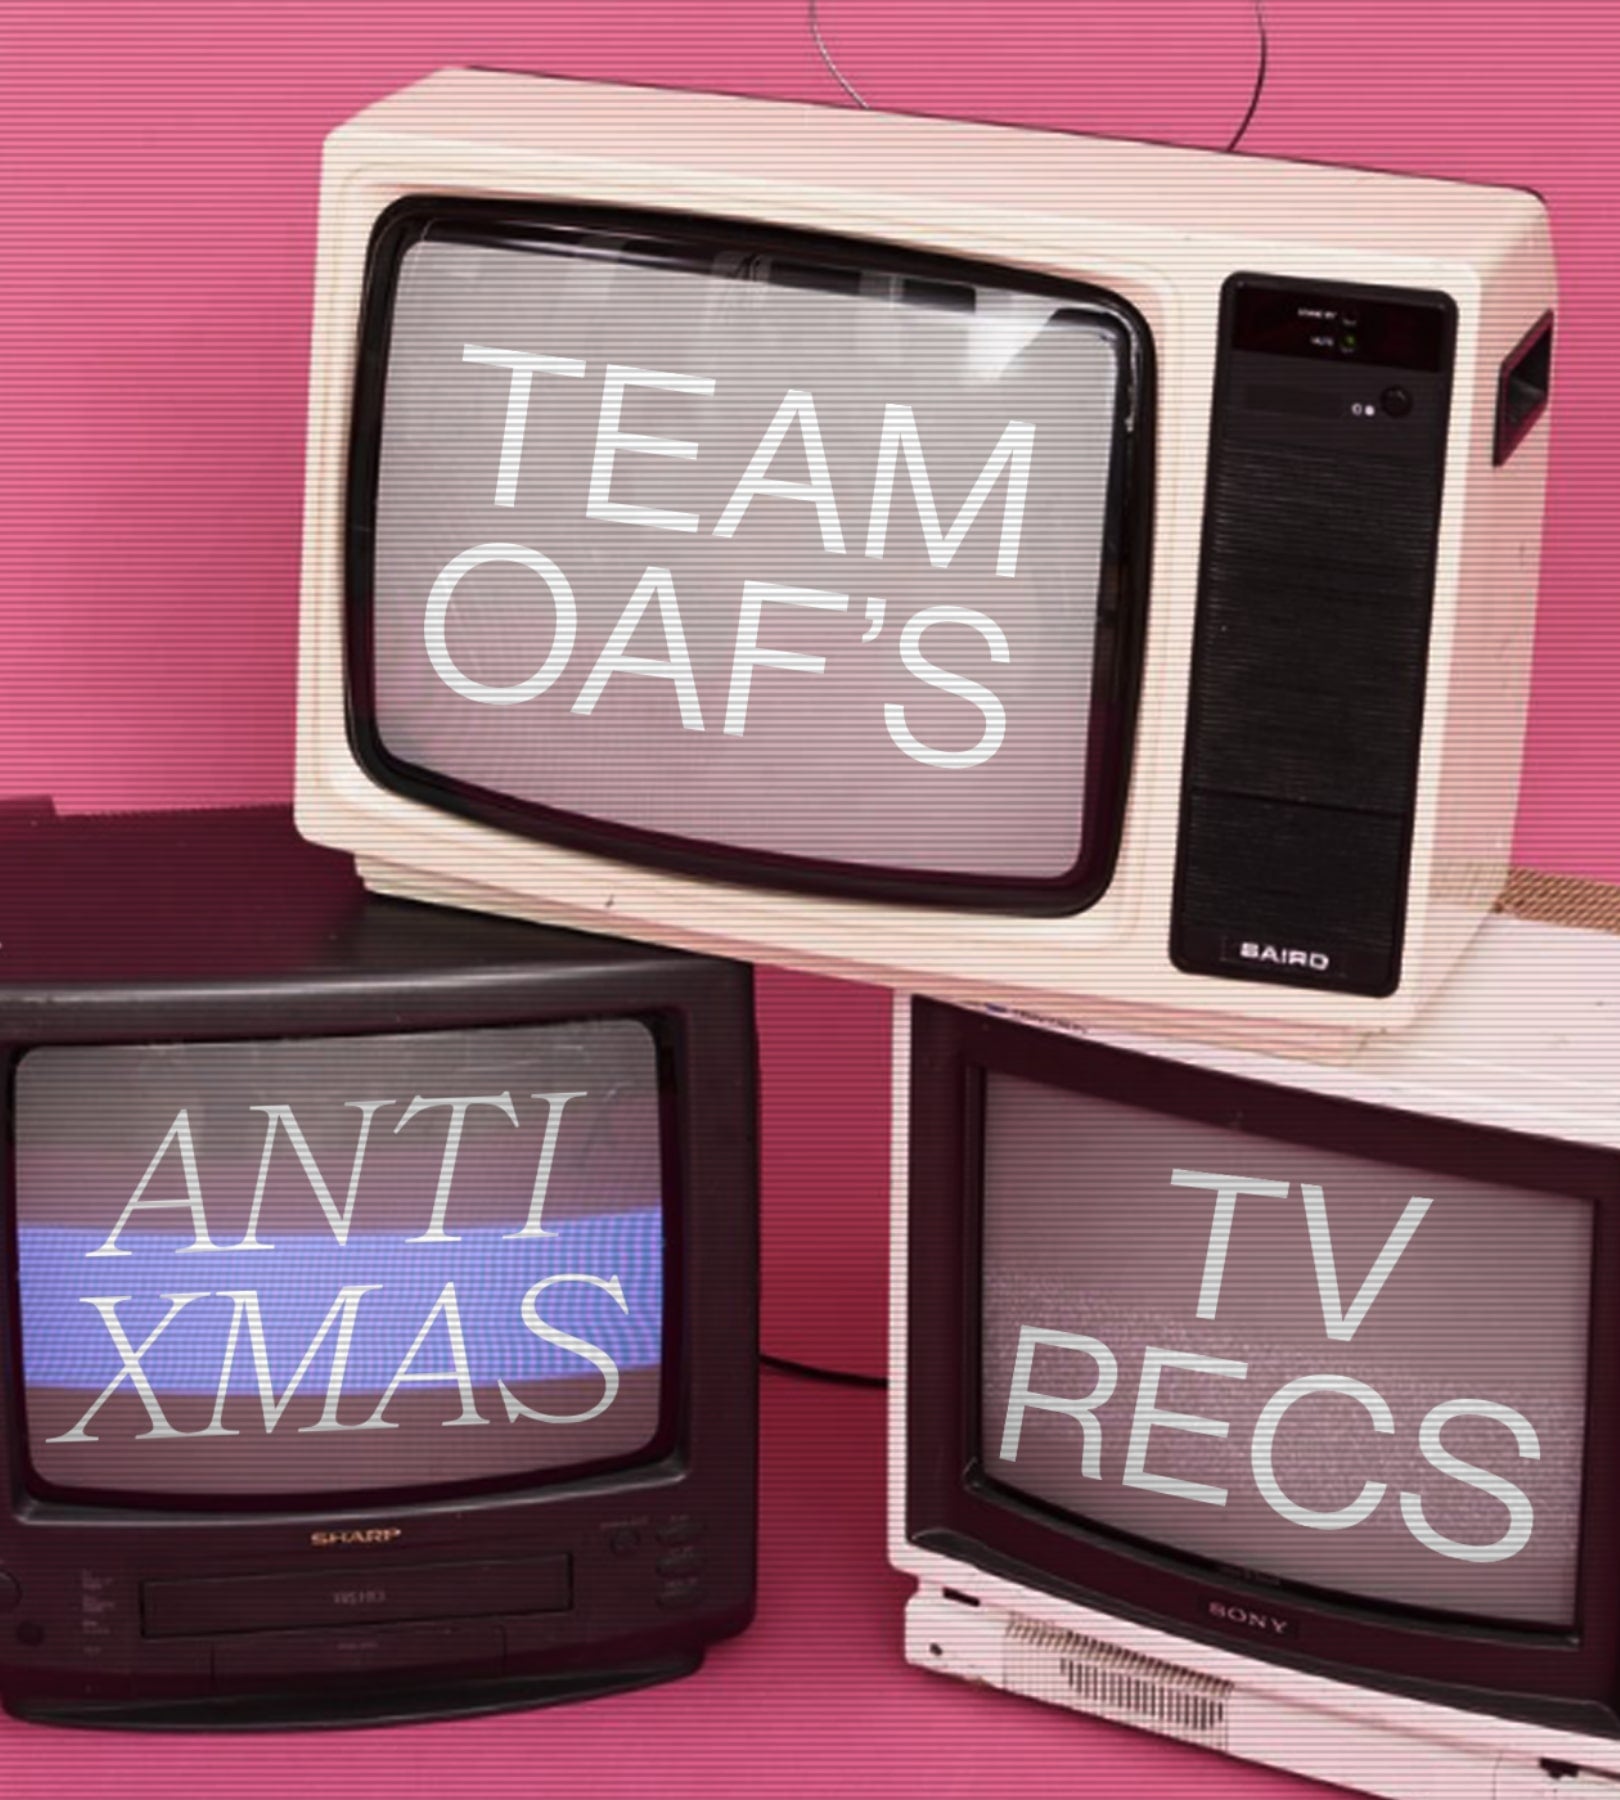 TEAM OAF’S ANTI-XMAS TV RECS